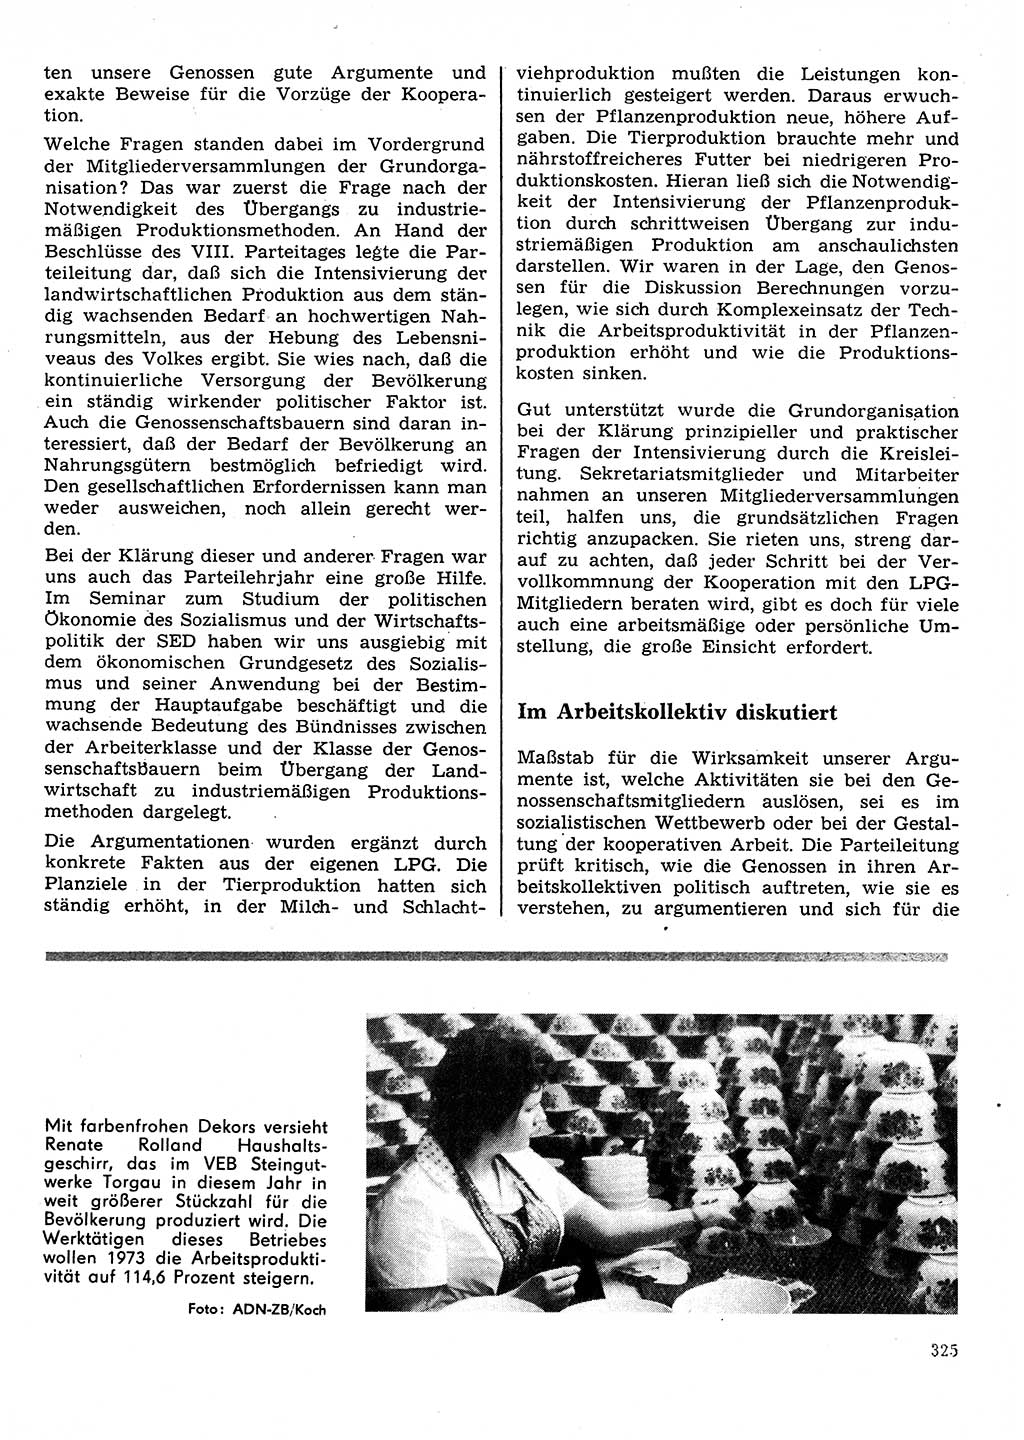 Neuer Weg (NW), Organ des Zentralkomitees (ZK) der SED (Sozialistische Einheitspartei Deutschlands) für Fragen des Parteilebens, 28. Jahrgang [Deutsche Demokratische Republik (DDR)] 1973, Seite 325 (NW ZK SED DDR 1973, S. 325)